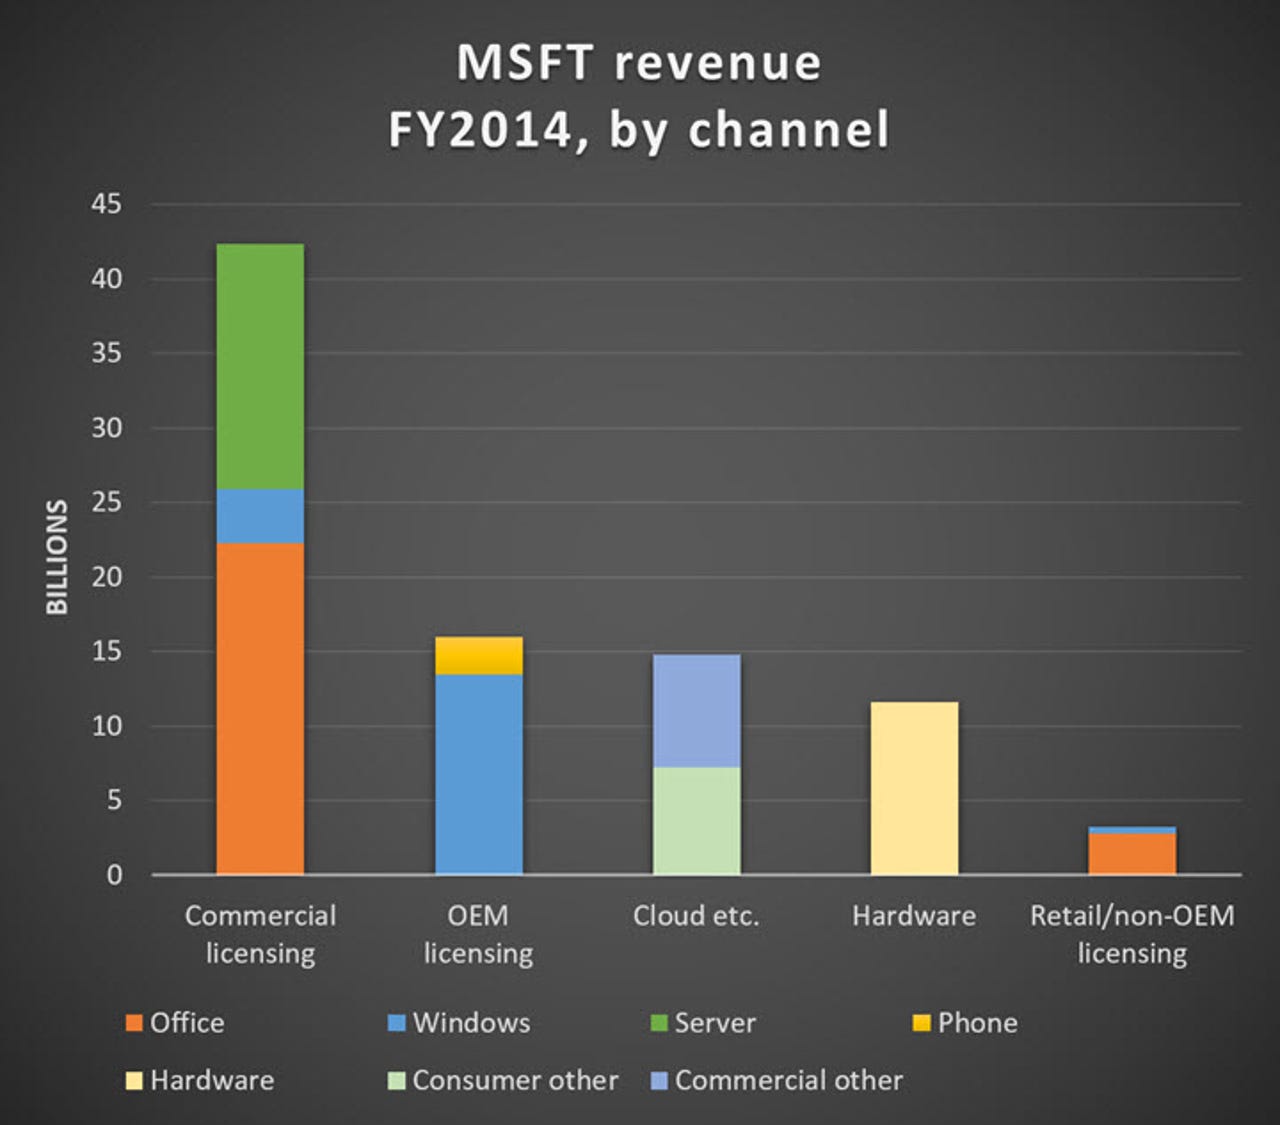 msft-revenue-2014-by-channel-720.jpg